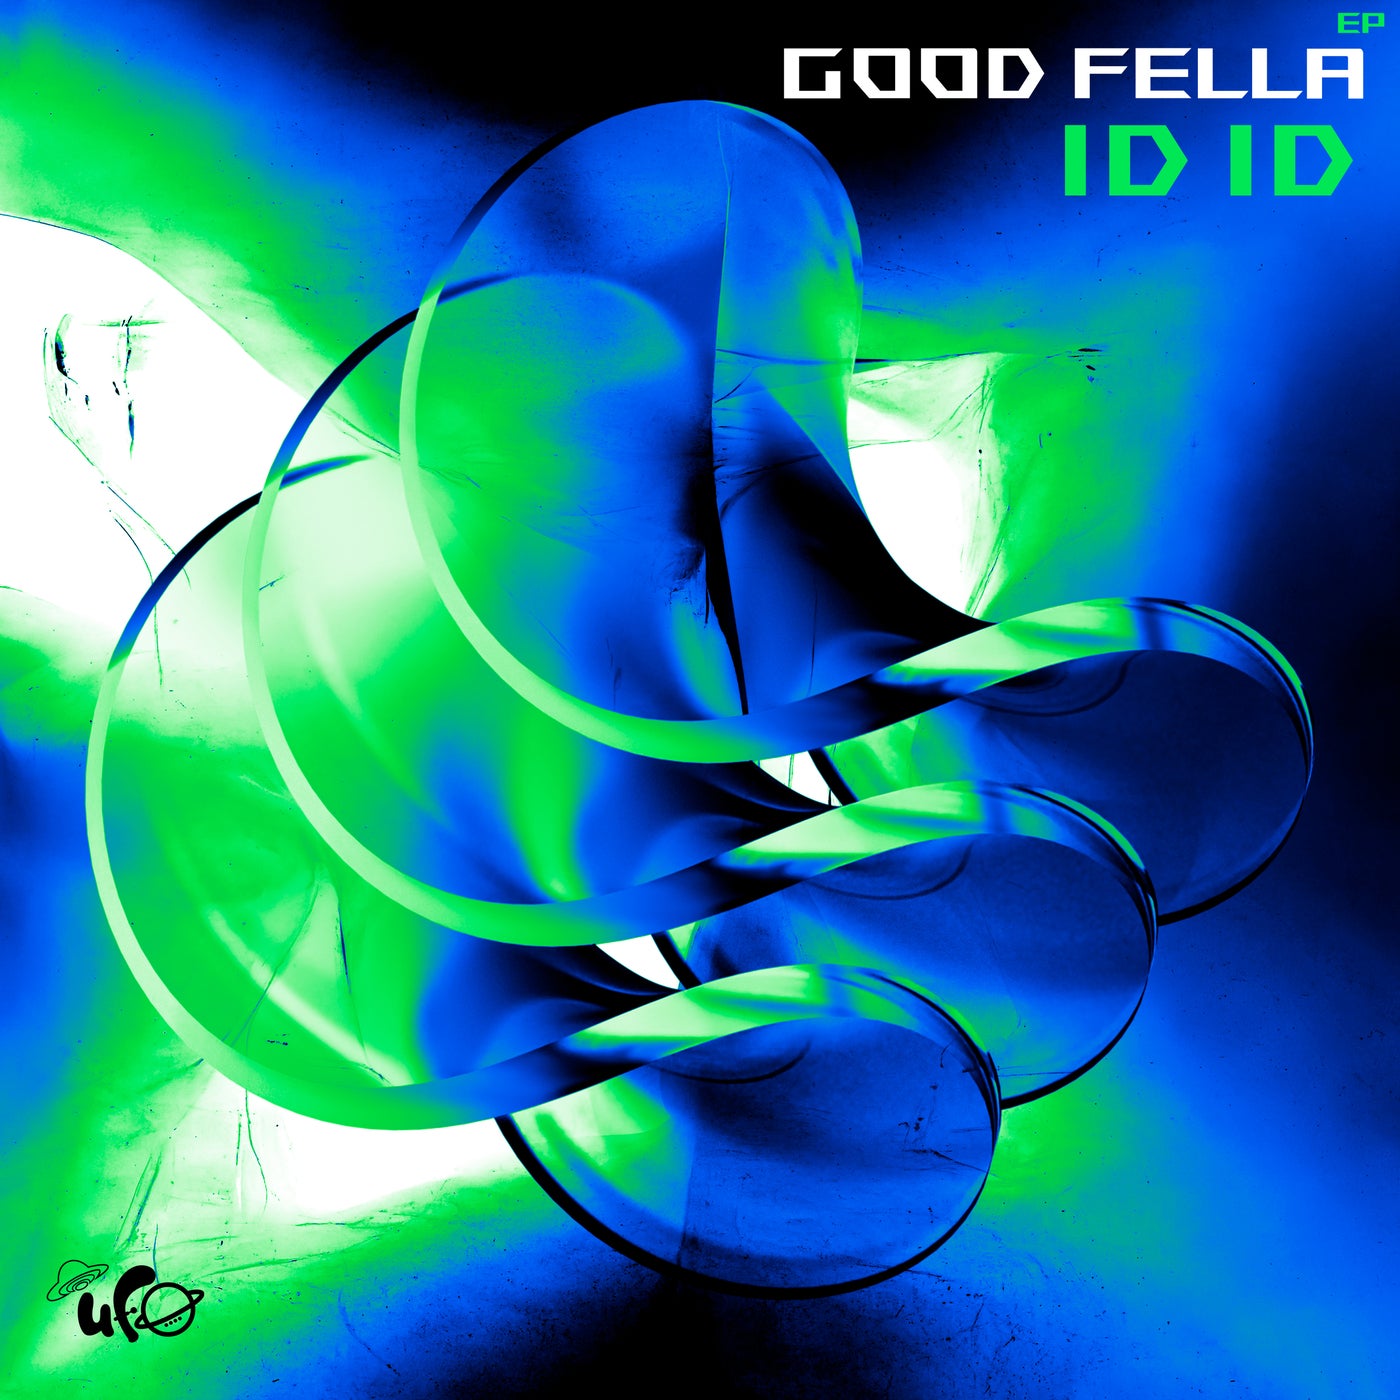 Cover - ID ID - Good Fella (Original Mix)